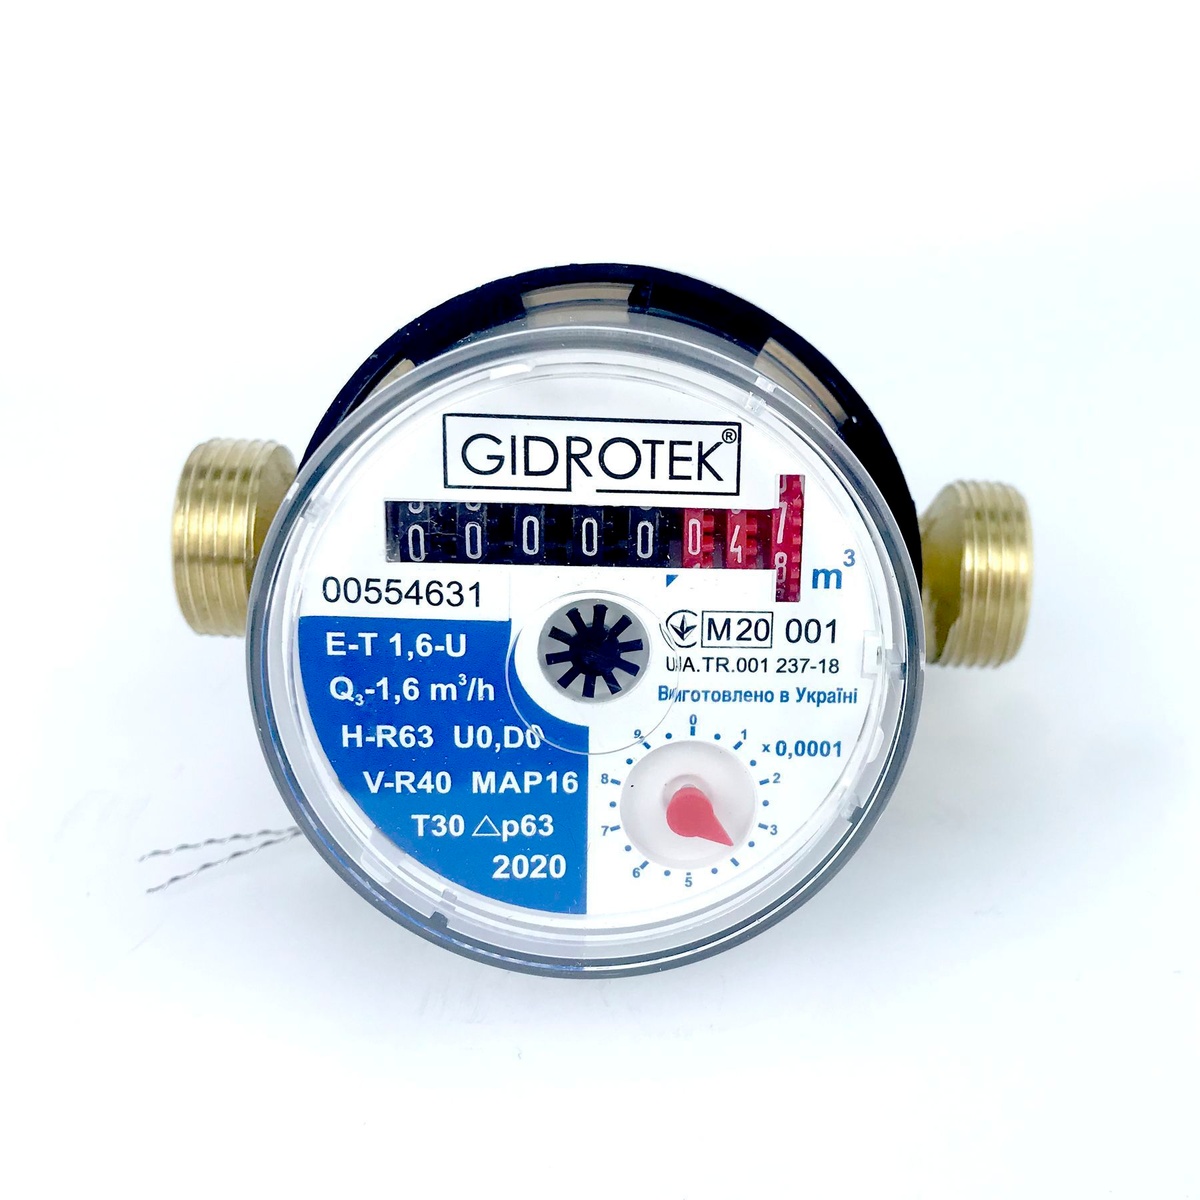 Счётчик для холодной воды GIDROTEK E-T 1.6U DN15 1/2" со штуцерами 000003372